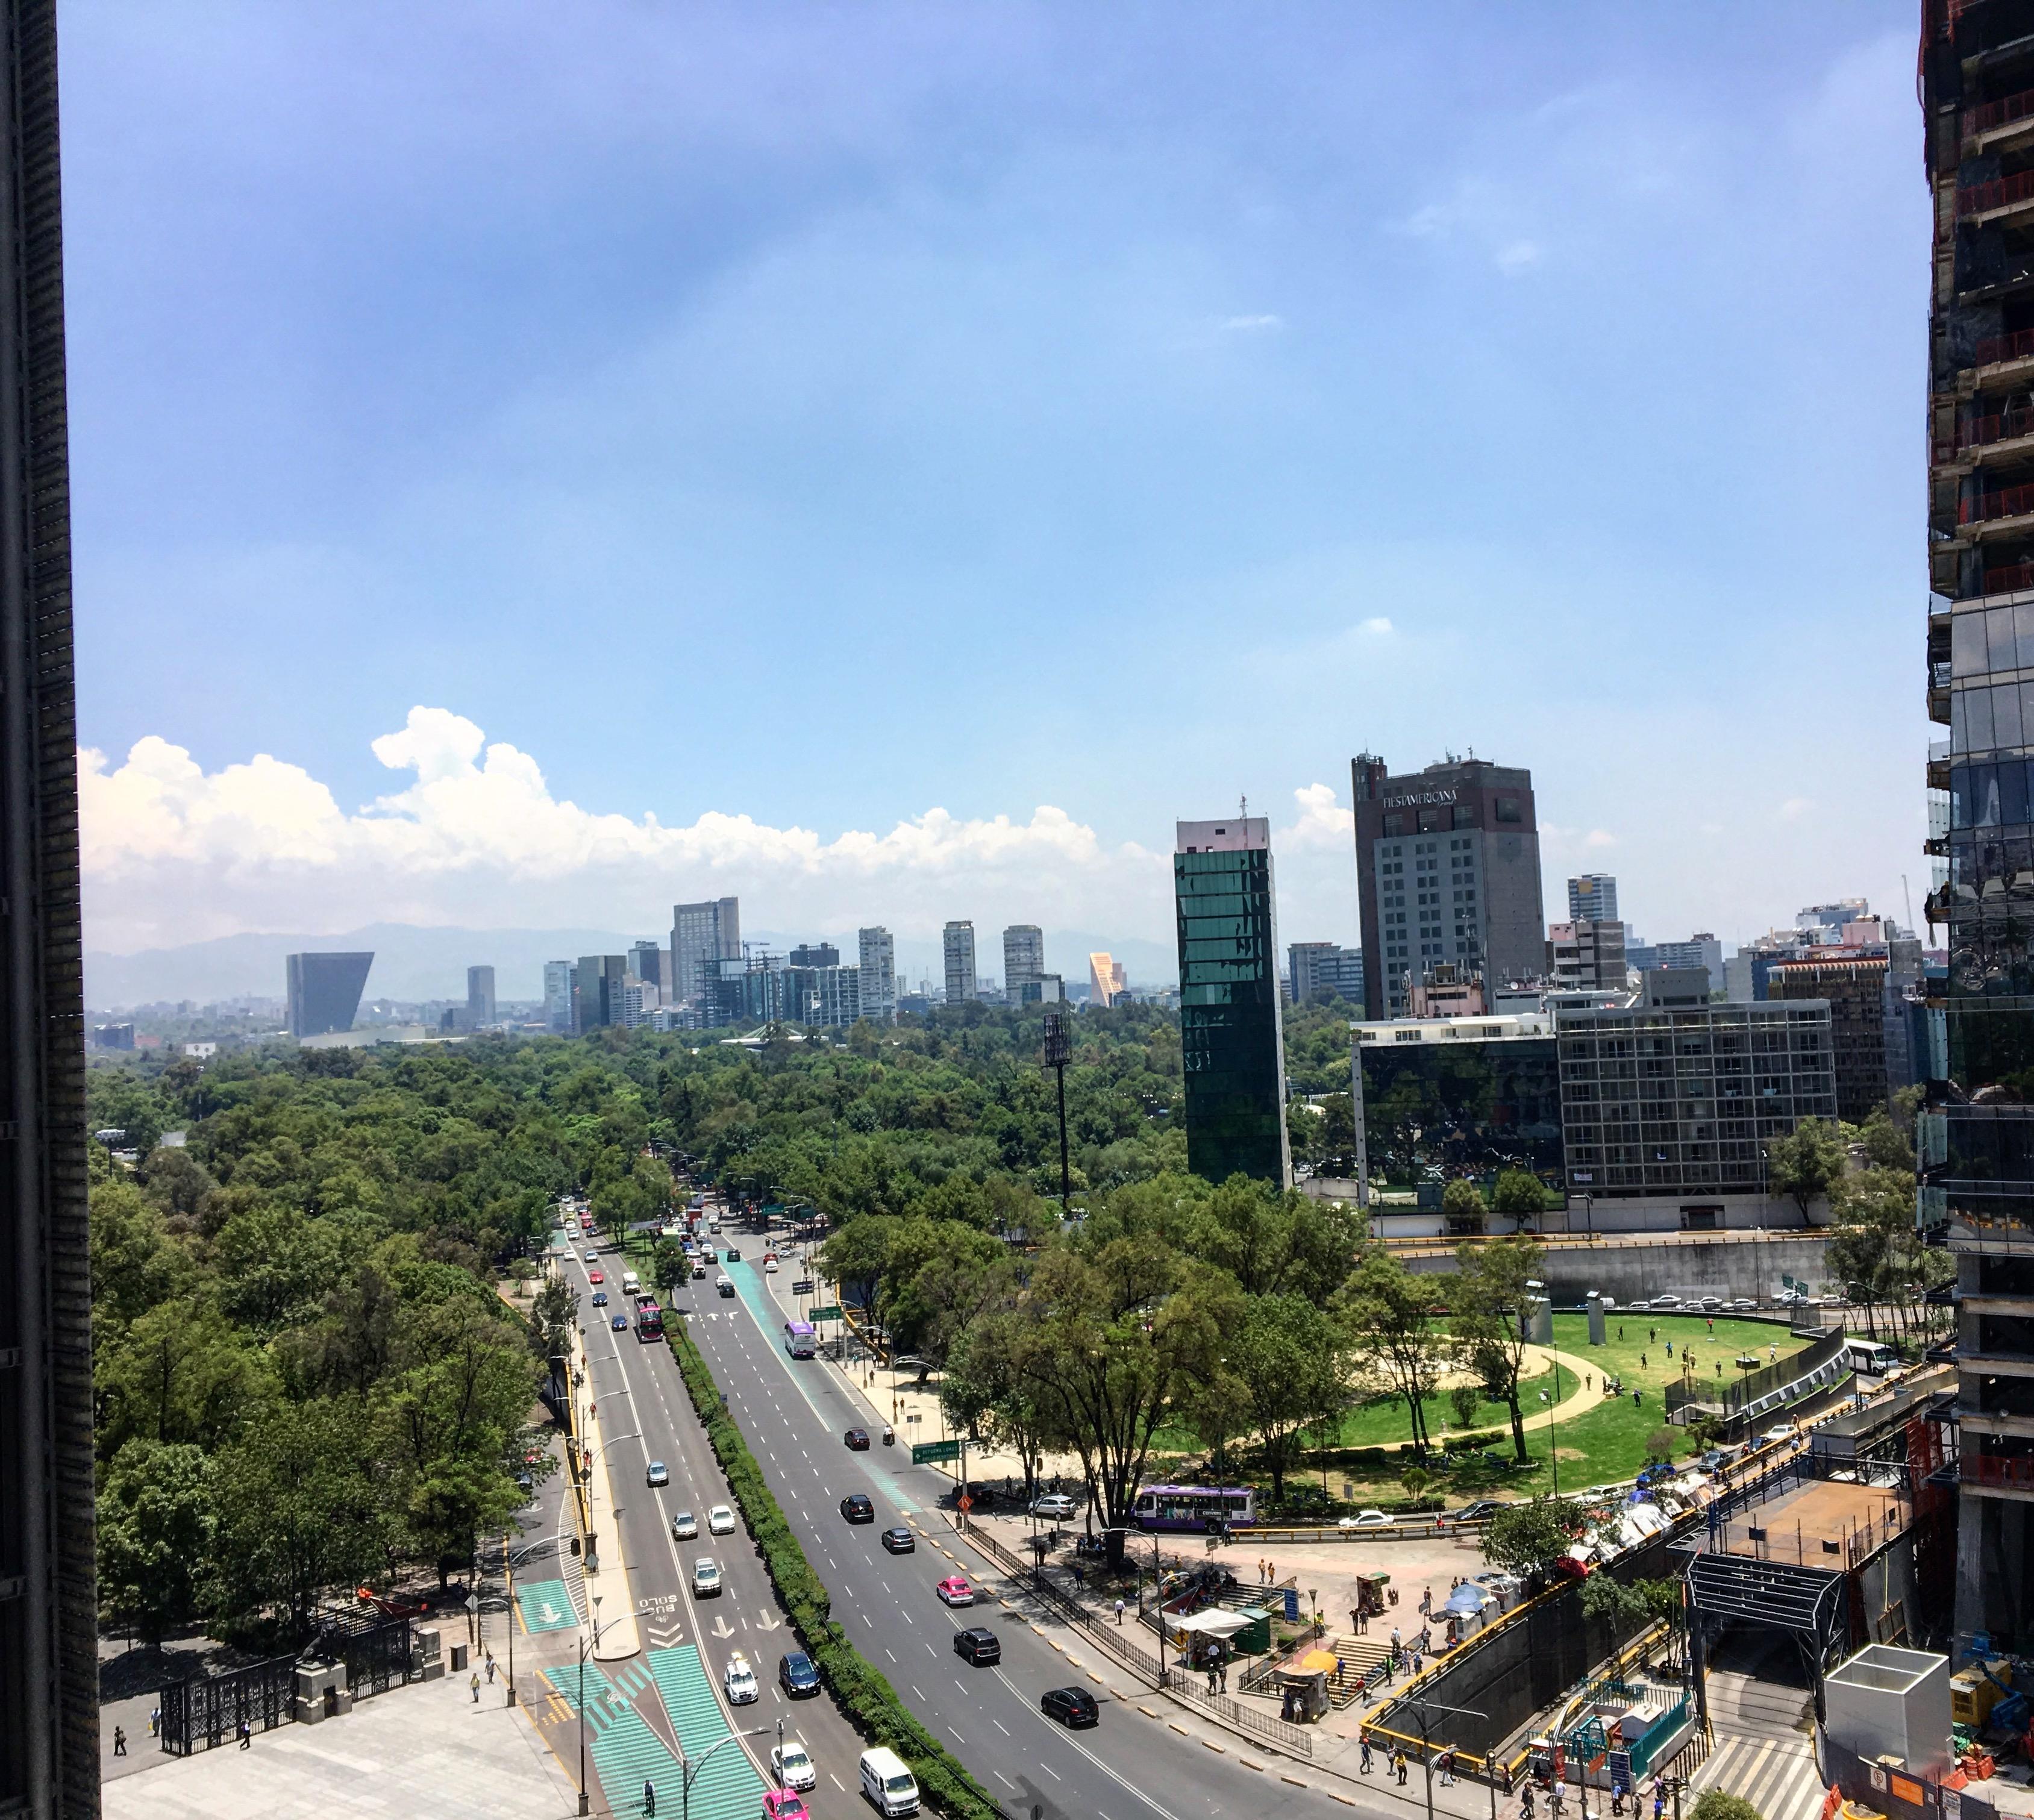 Ciudad de México avanza en objetivos de Agenda de las Naciones Unidas